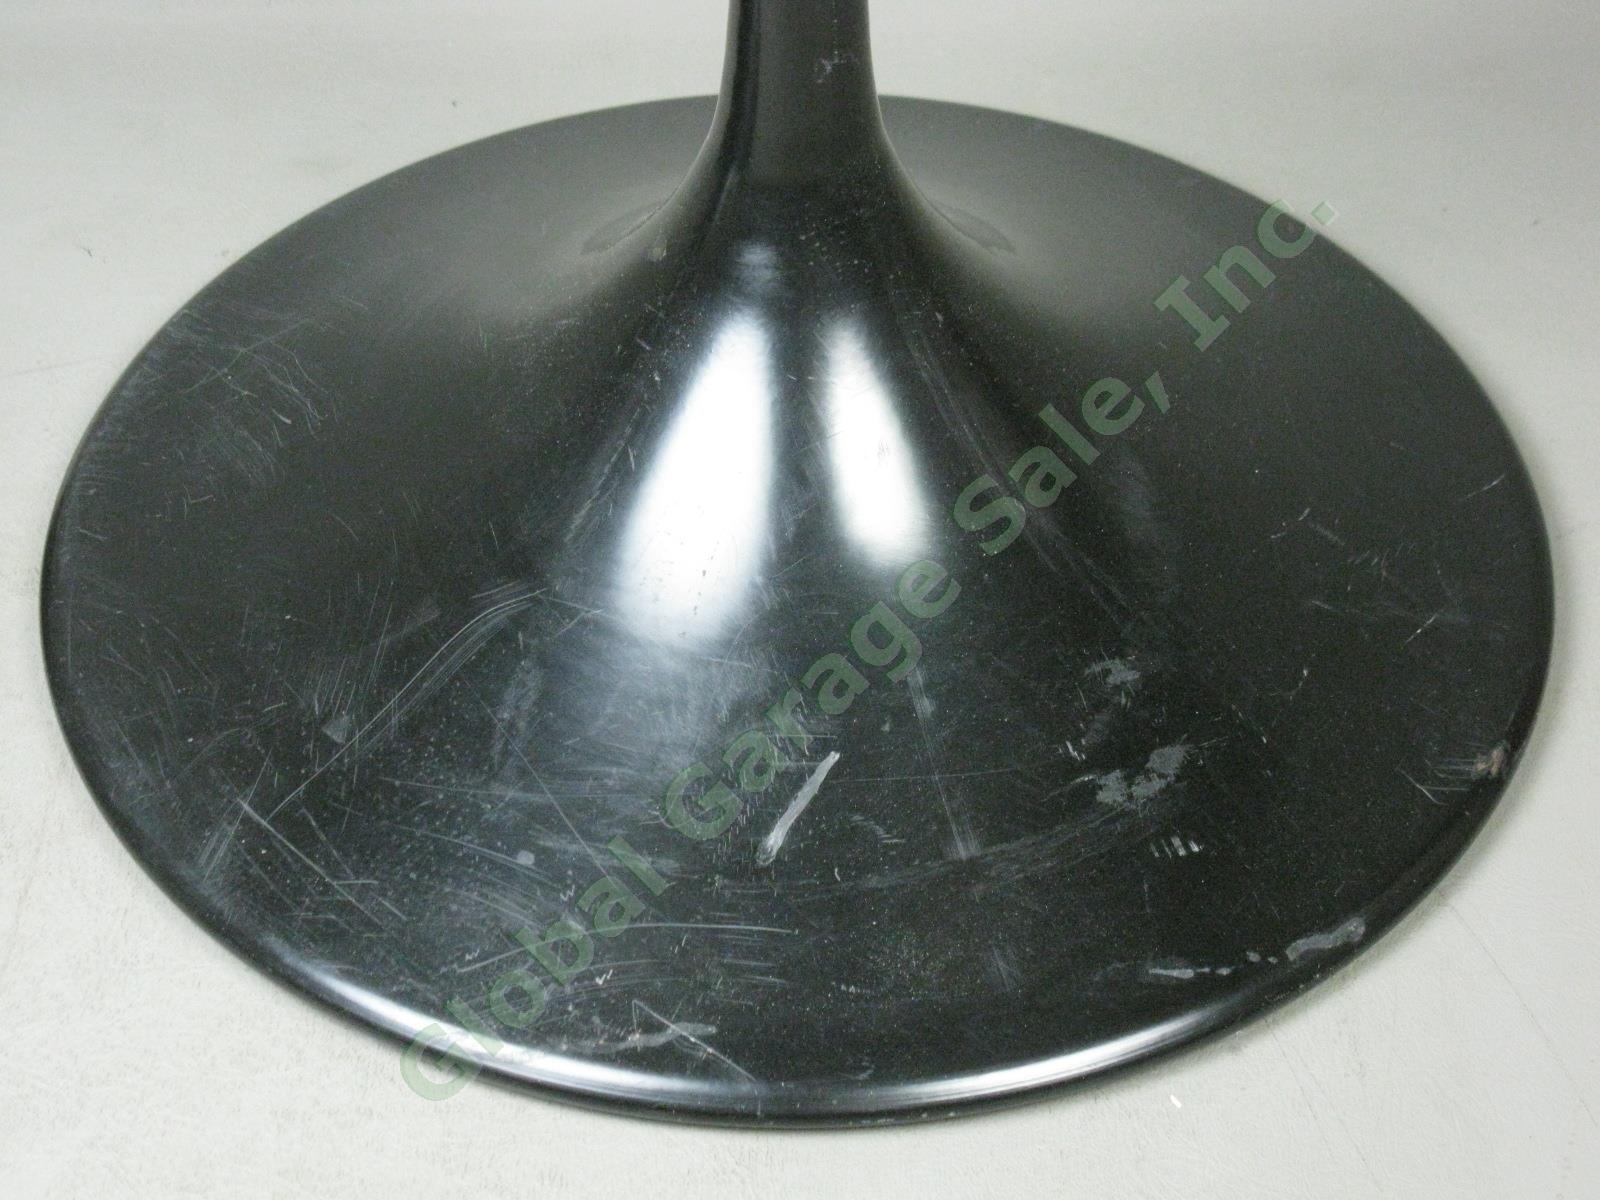 Bose 901 Black Tulip Speaker Pedestal Stands 3 Screw Holes Series II One Owner 3